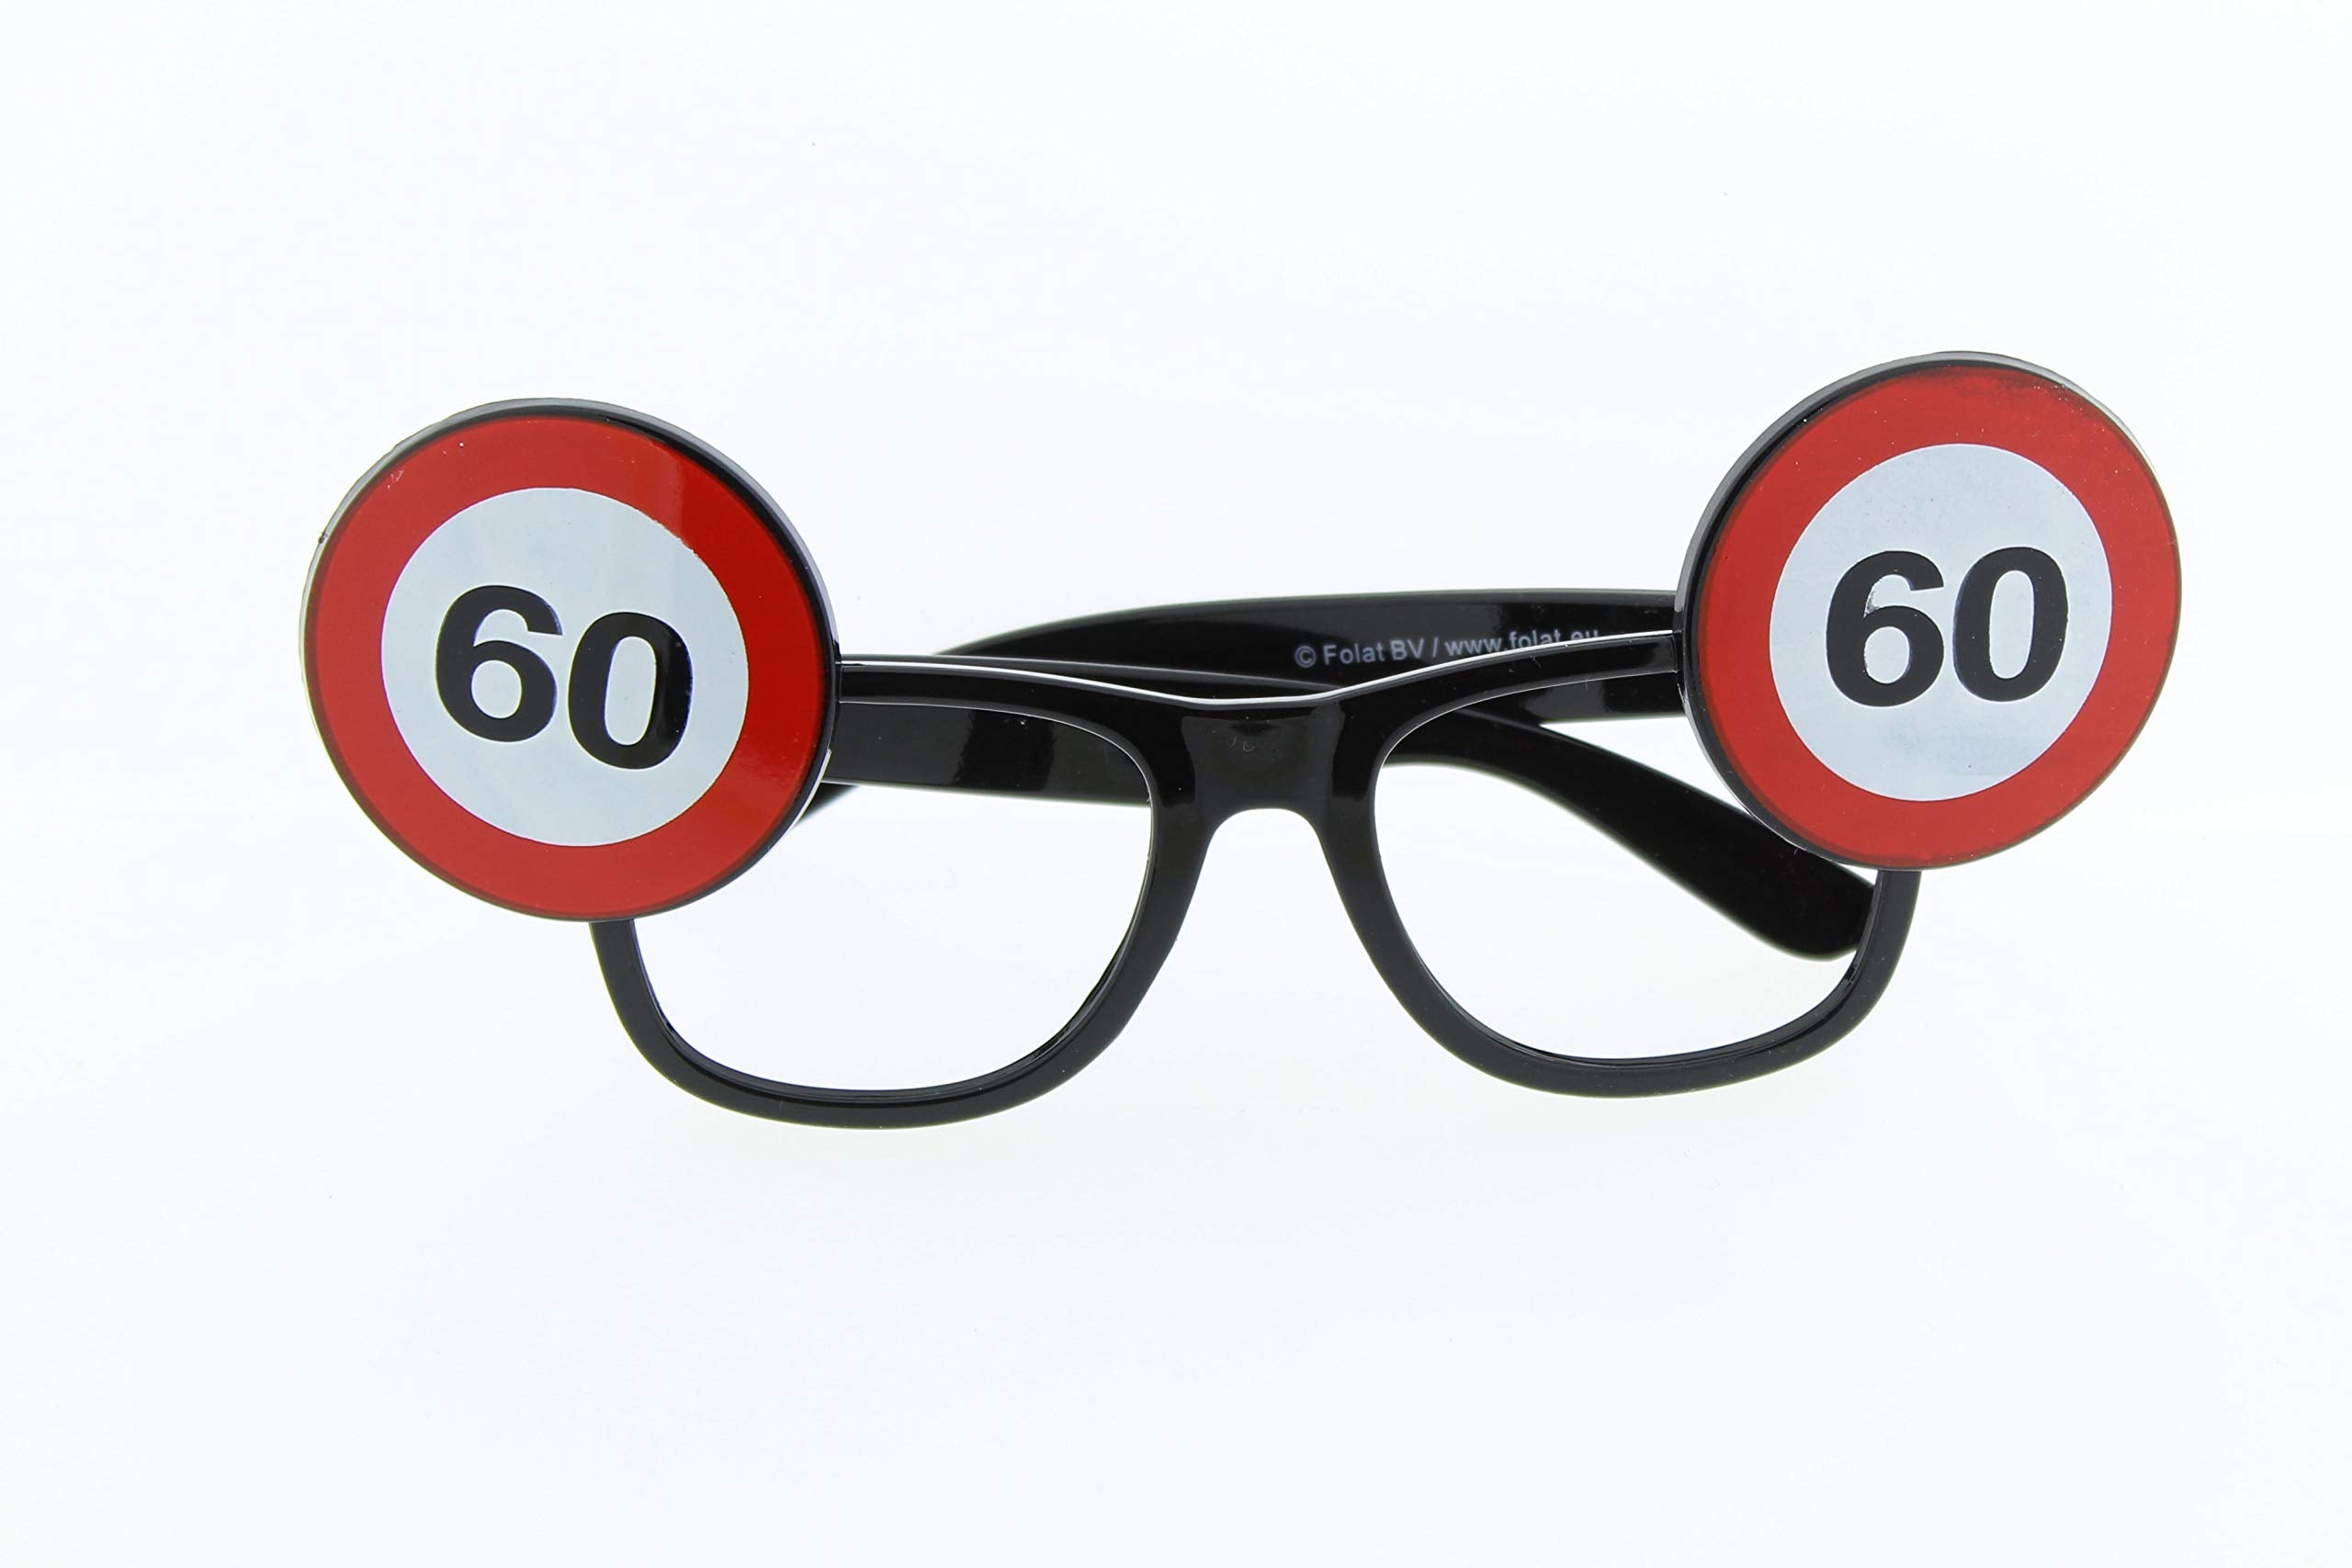 Sonnenbrille Gag Brille zum Geburtstag im Verkehrszeichenformat Jahreszahl 60